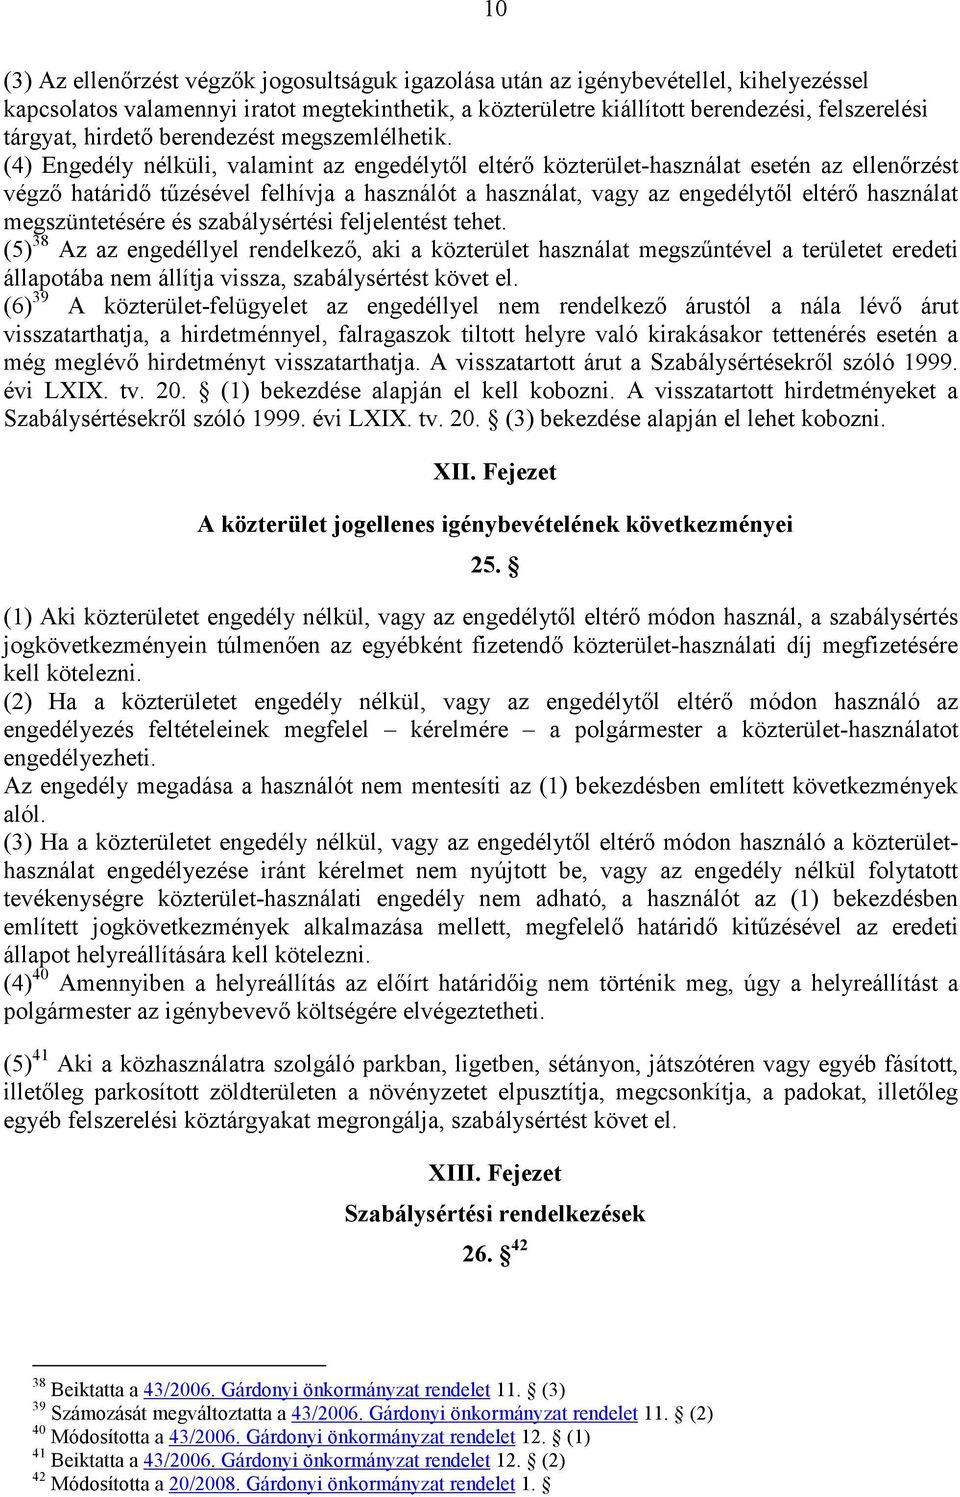 (4) Engedély nélküli, valamint az engedélytıl eltérı közterület-használat esetén az ellenırzést végzı határidı tőzésével felhívja a használót a használat, vagy az engedélytıl eltérı használat